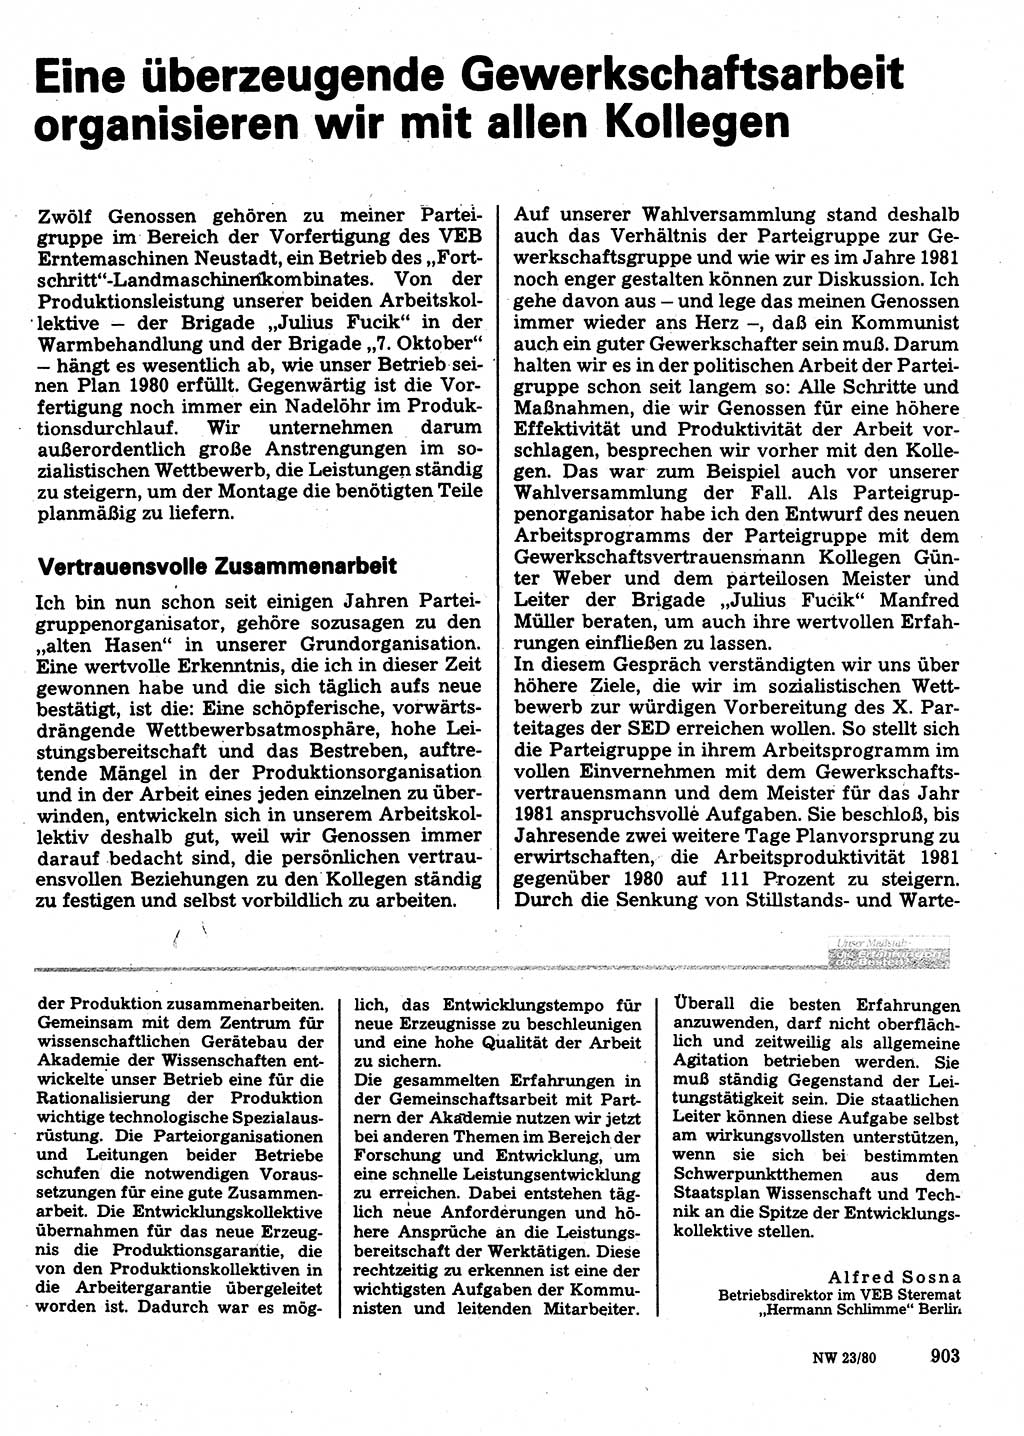 Neuer Weg (NW), Organ des Zentralkomitees (ZK) der SED (Sozialistische Einheitspartei Deutschlands) für Fragen des Parteilebens, 35. Jahrgang [Deutsche Demokratische Republik (DDR)] 1980, Seite 903 (NW ZK SED DDR 1980, S. 903)